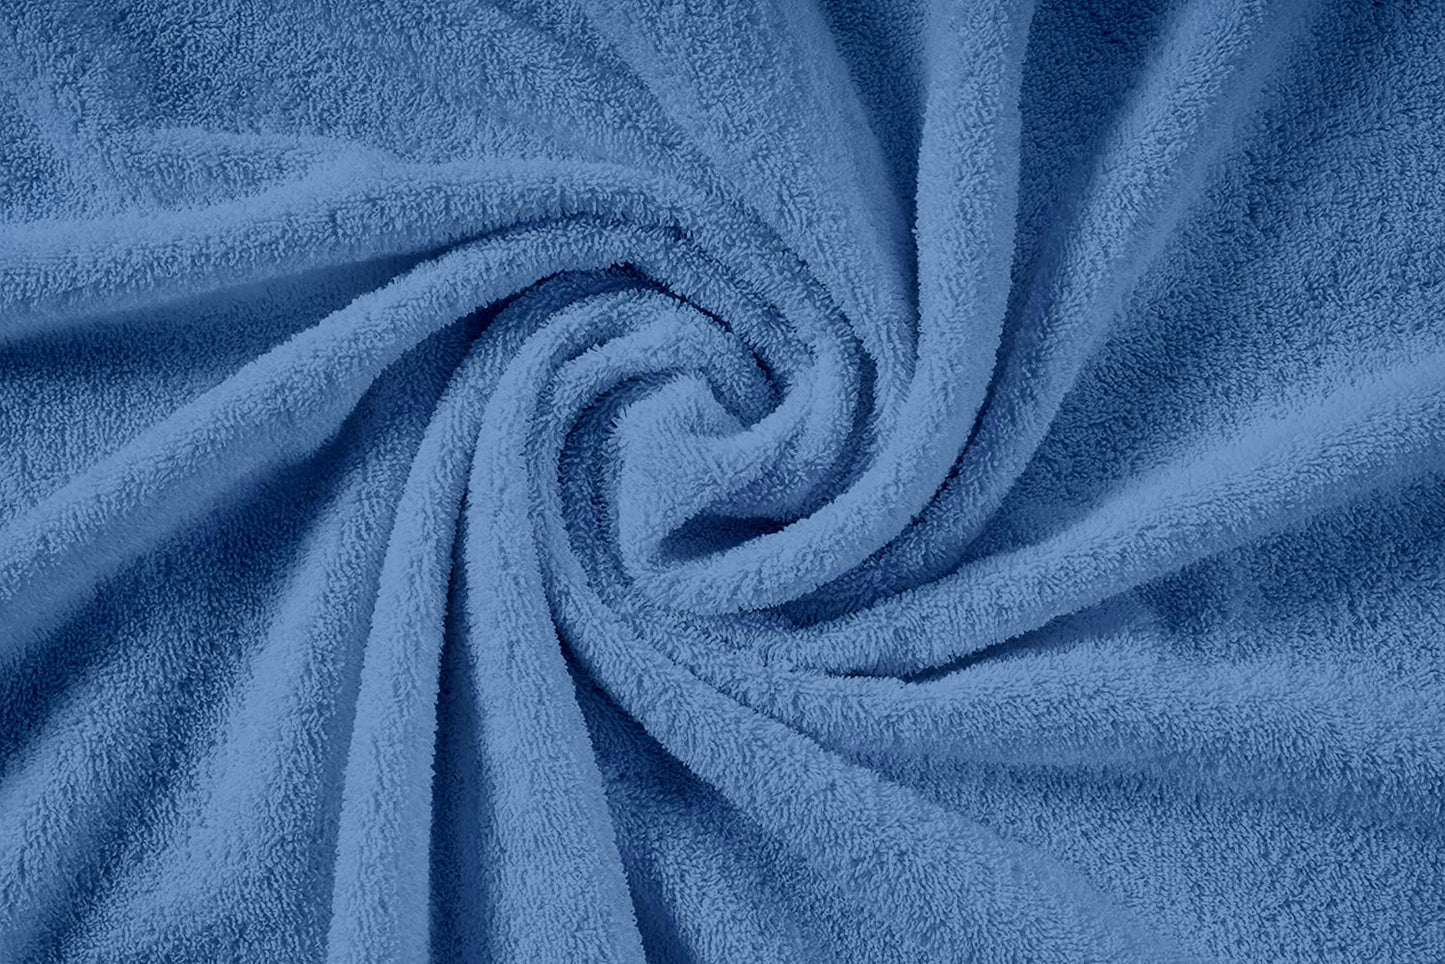 6 Piece Cotton Towel Set 550GSM - Blue Allure